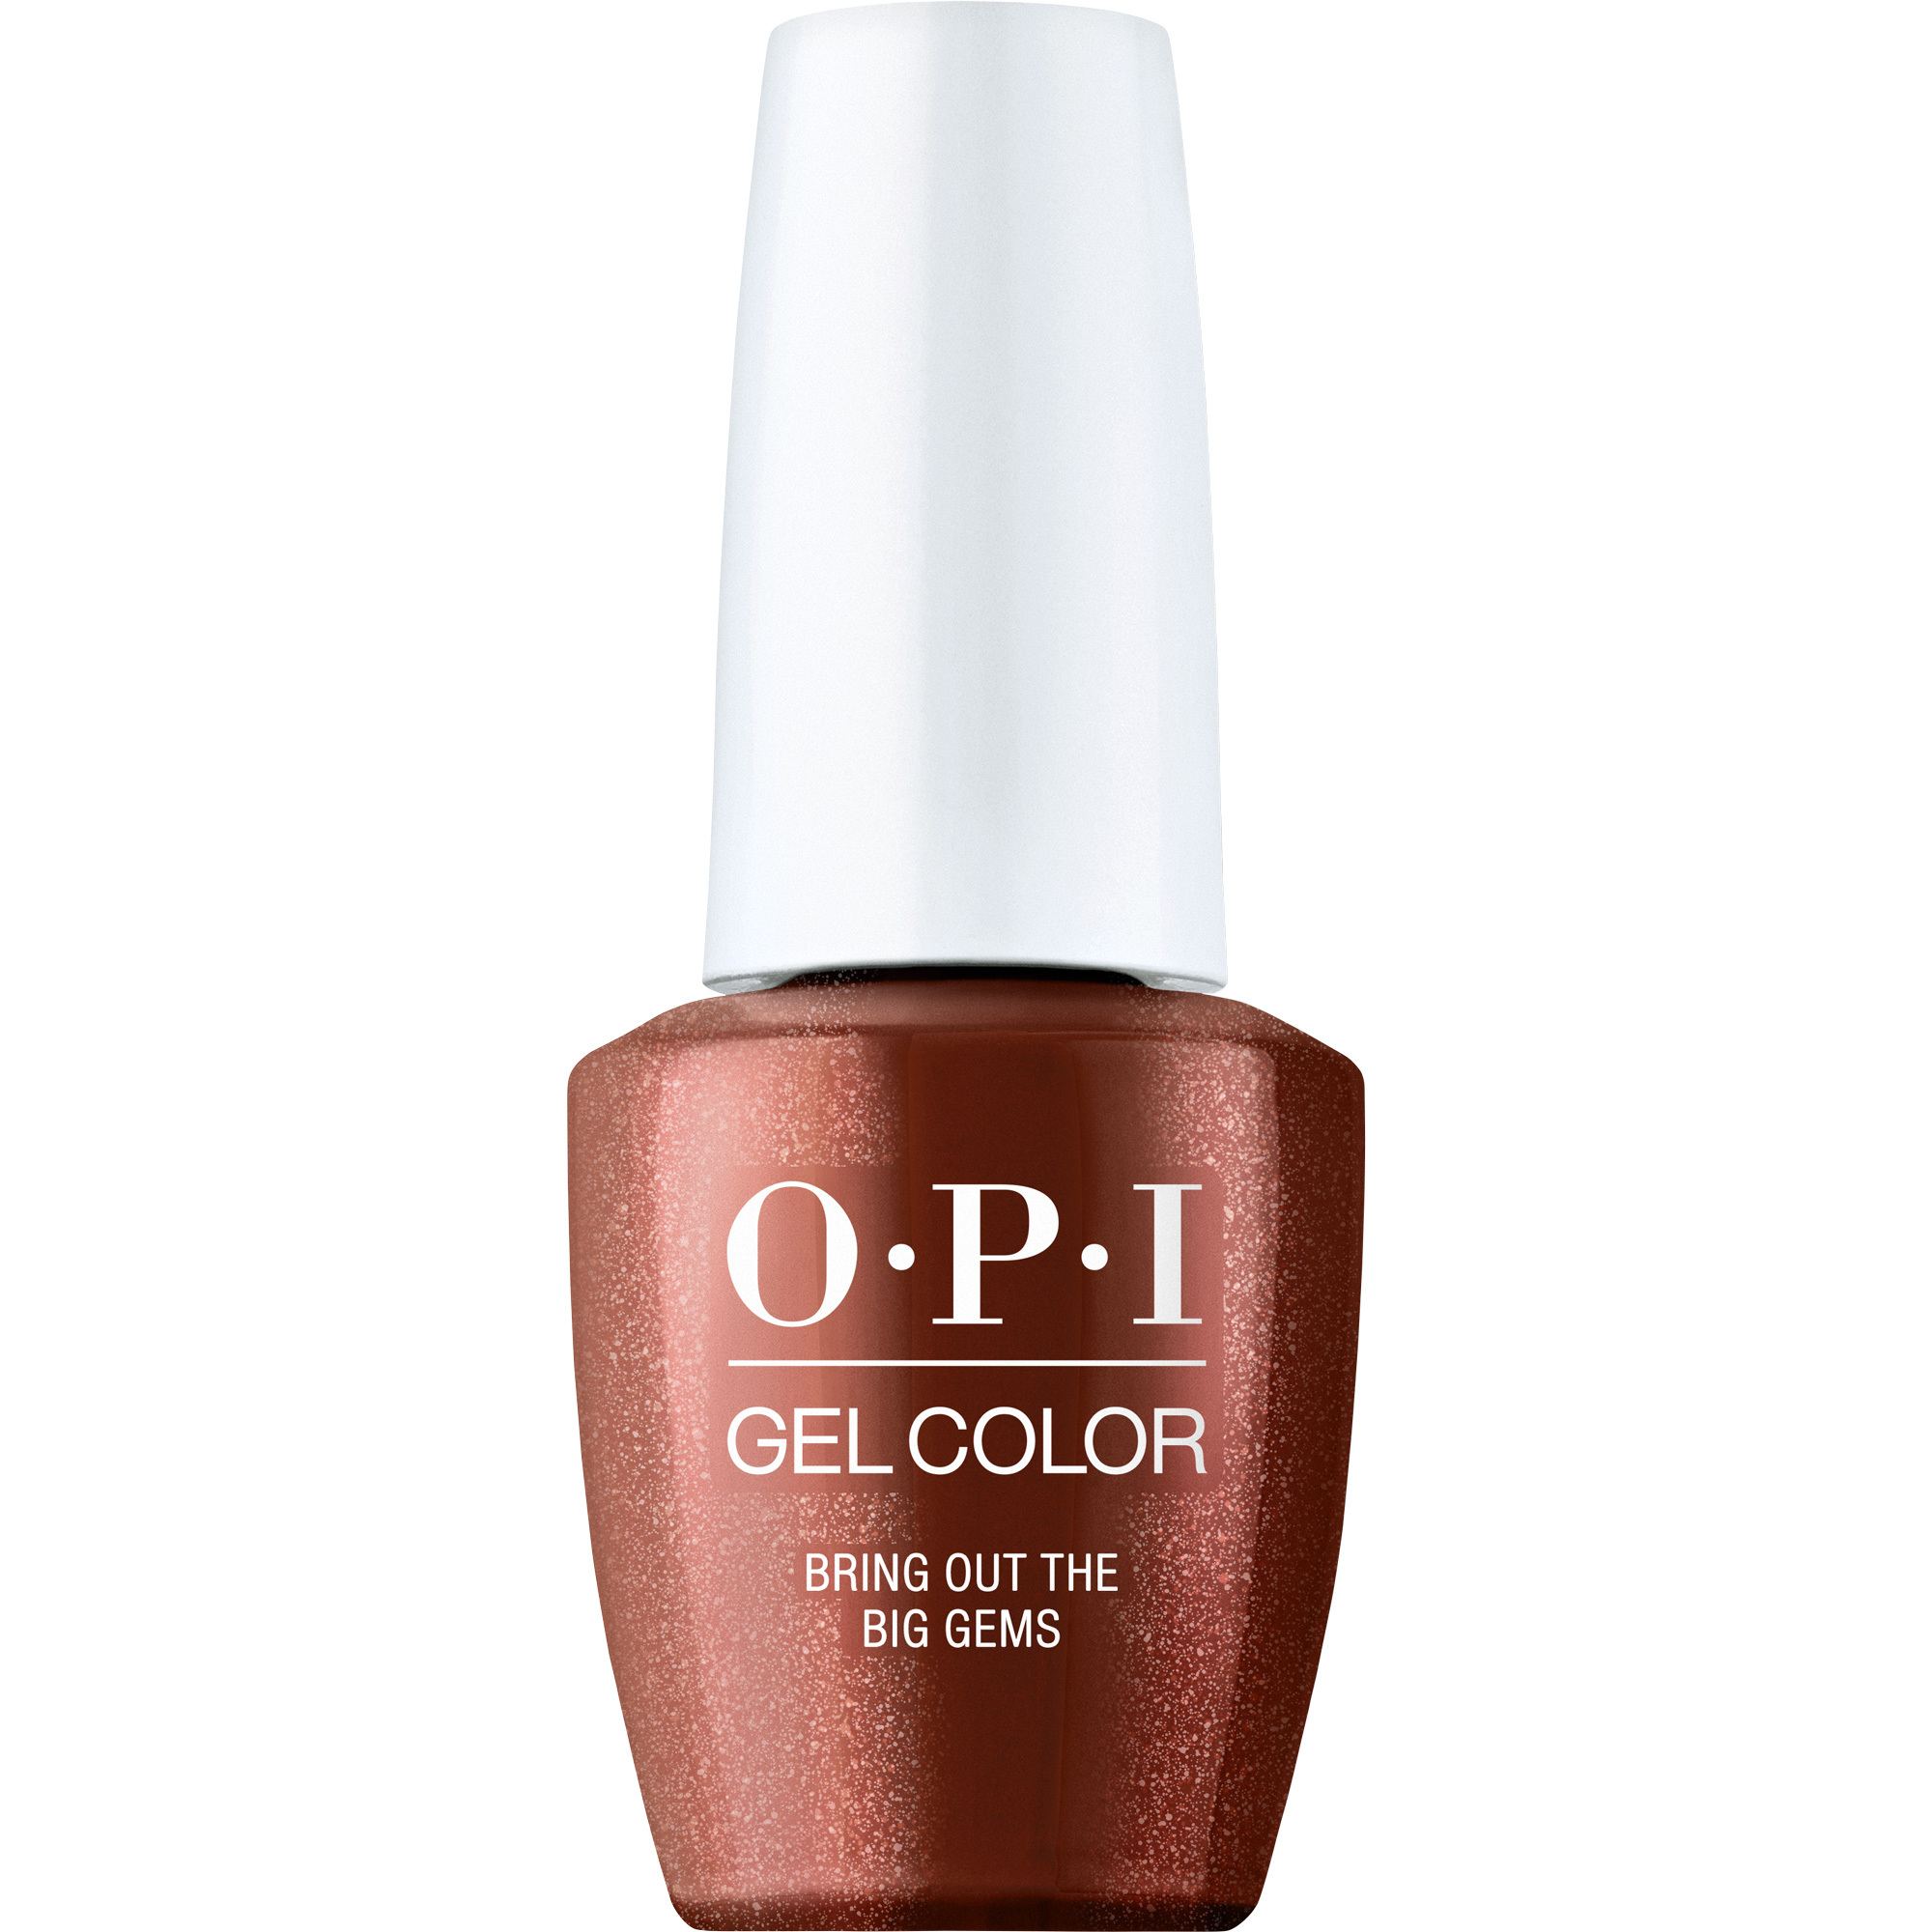 OPI Gel Color 360 - Bring out the Big Gems